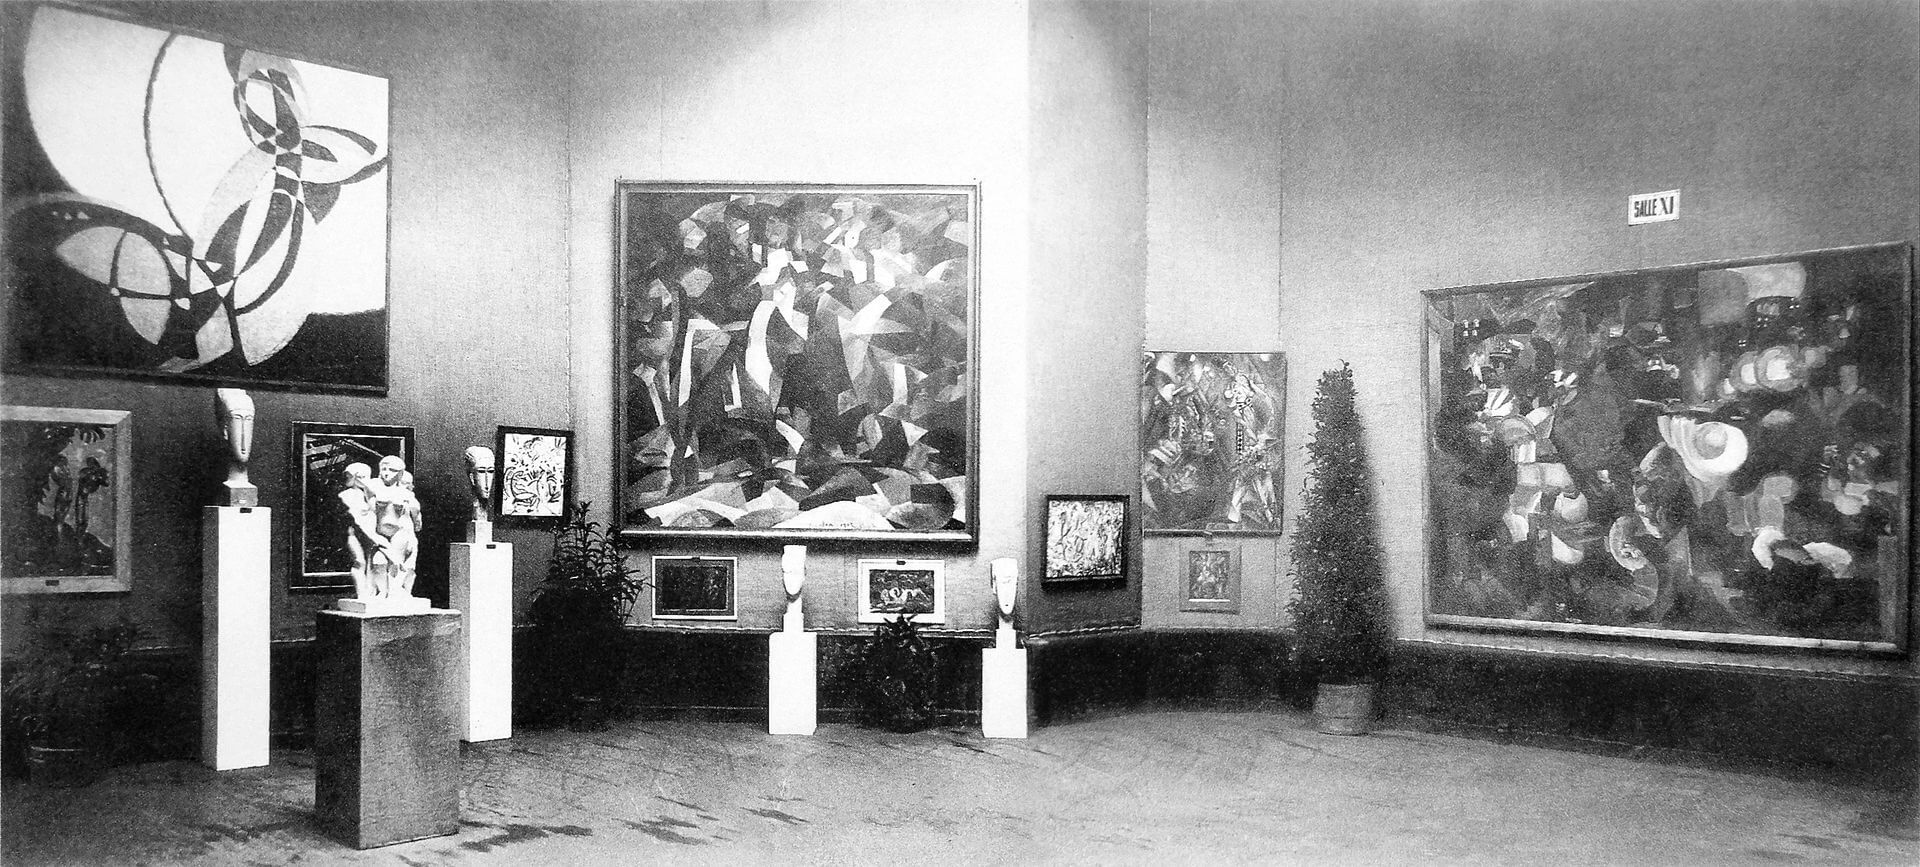 1920px-Salon_d'Automne_1912,_Paris,_works_exhibited_by_Kupka,_Modigliani,_Csaky,_Picabia,_Metzinger,_Le_Fauconnier